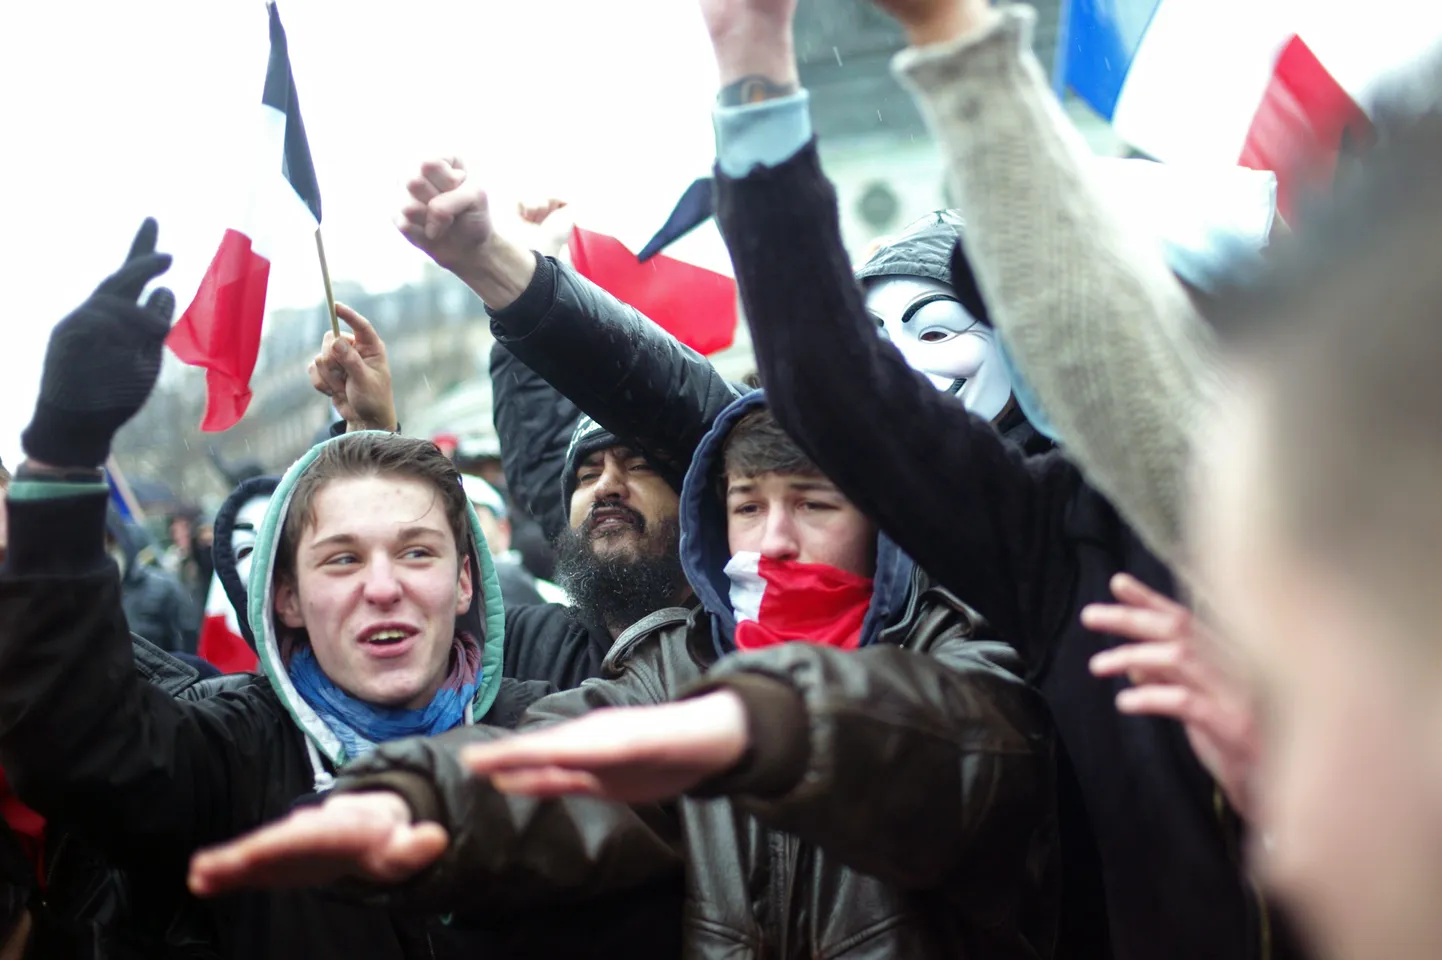 Protestijad avaldamas meelt Prantsuse presidendi poliitika vastu.